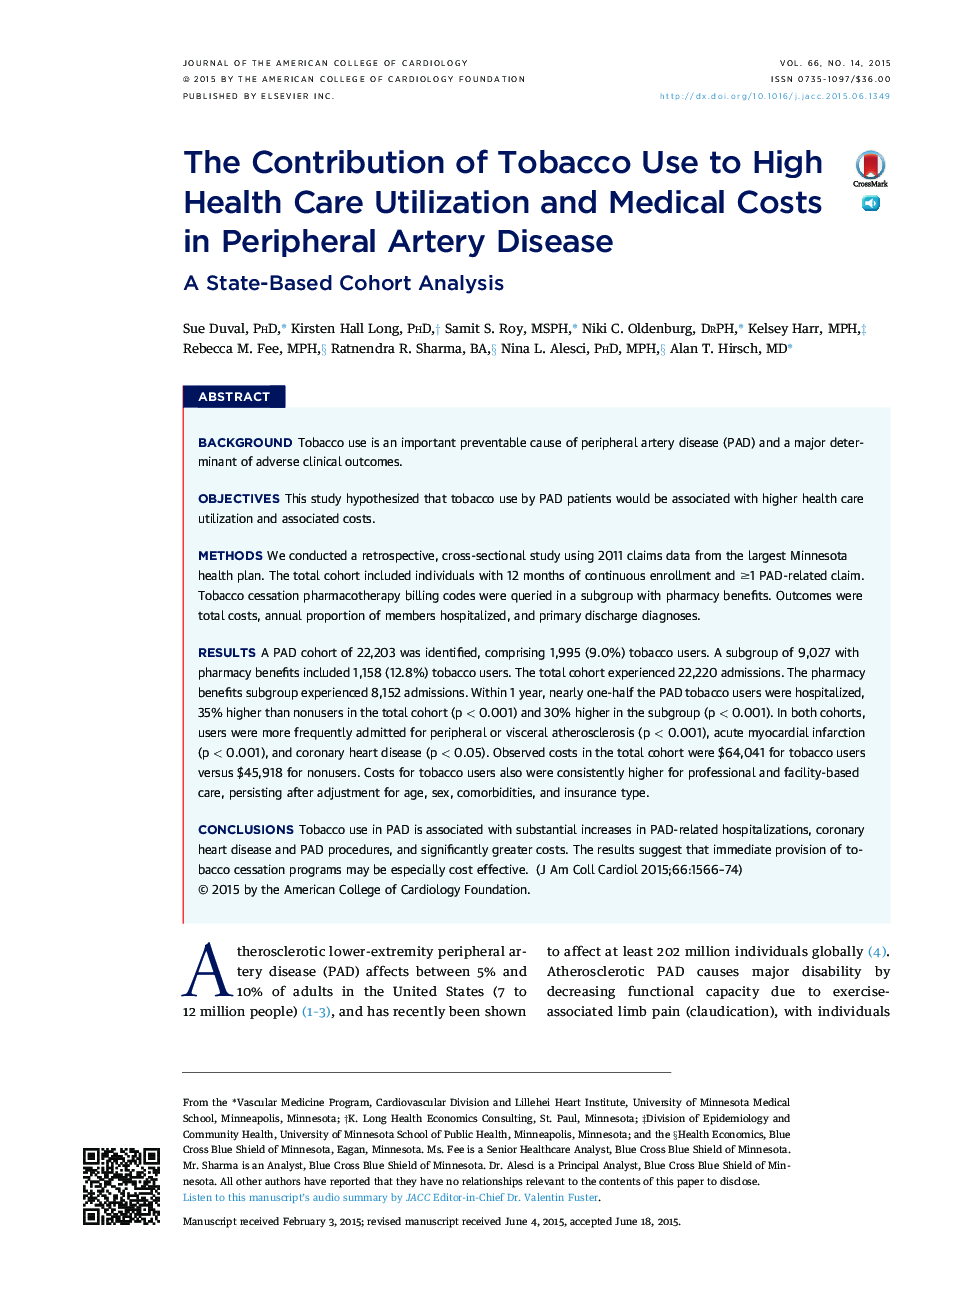 سهم استفاده از تنباکو به استفاده از مراقبت های بهداشتی بالا و هزینه های پزشکی در بیماری عروق محیطی: یک تجزیه و تحلیل کوهورت مبتنی بر دولت 